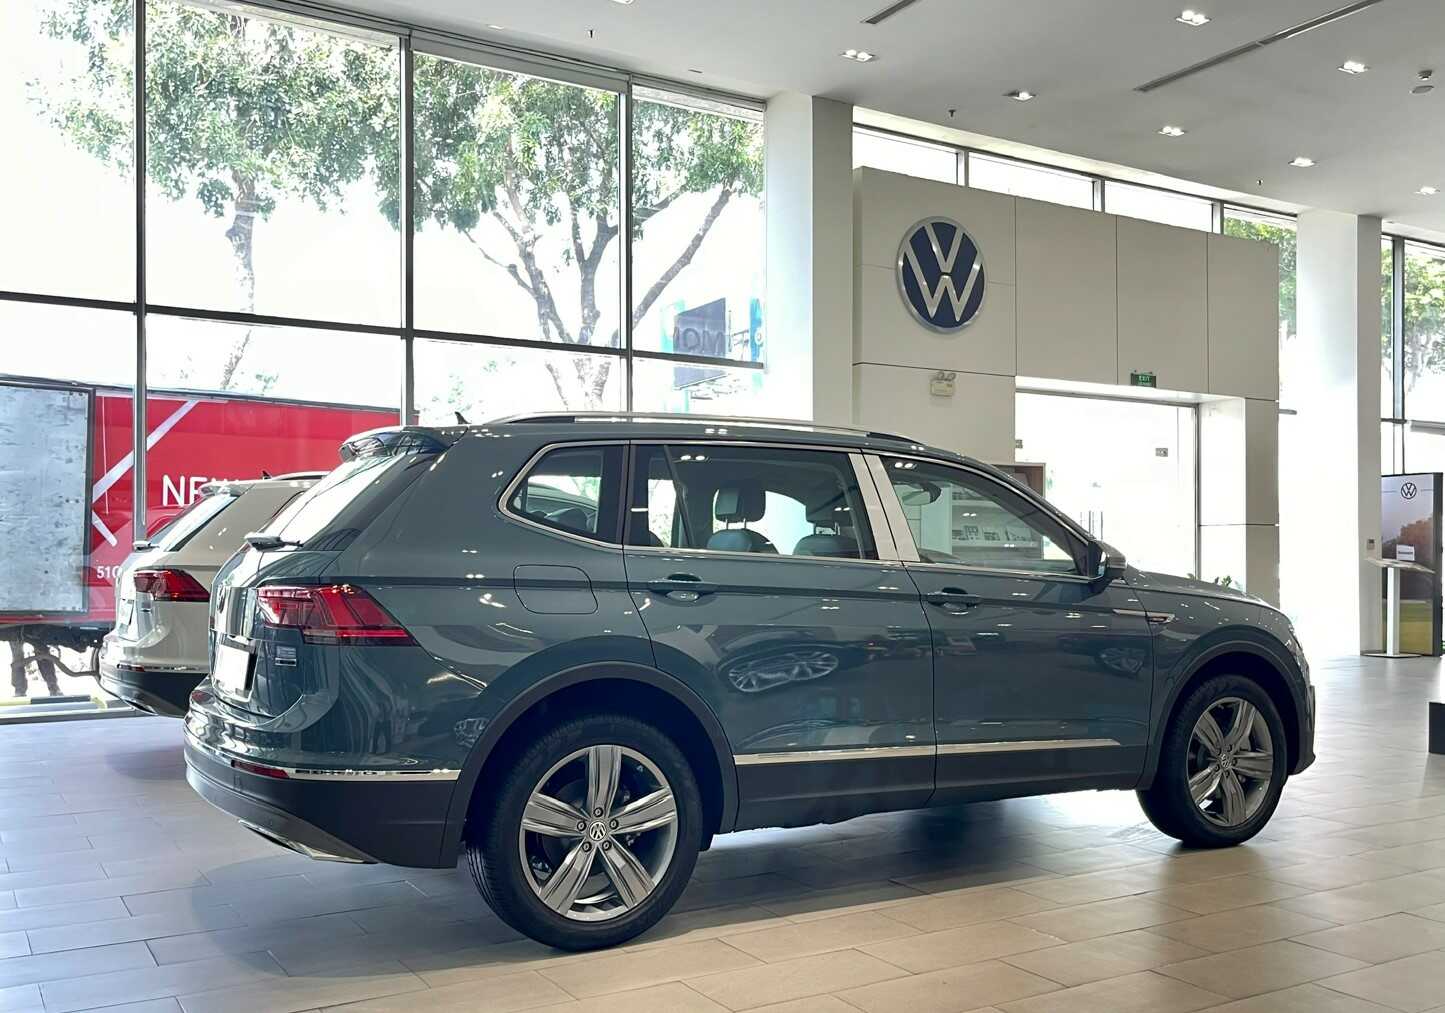 Volkswagen Tiguan Elegance